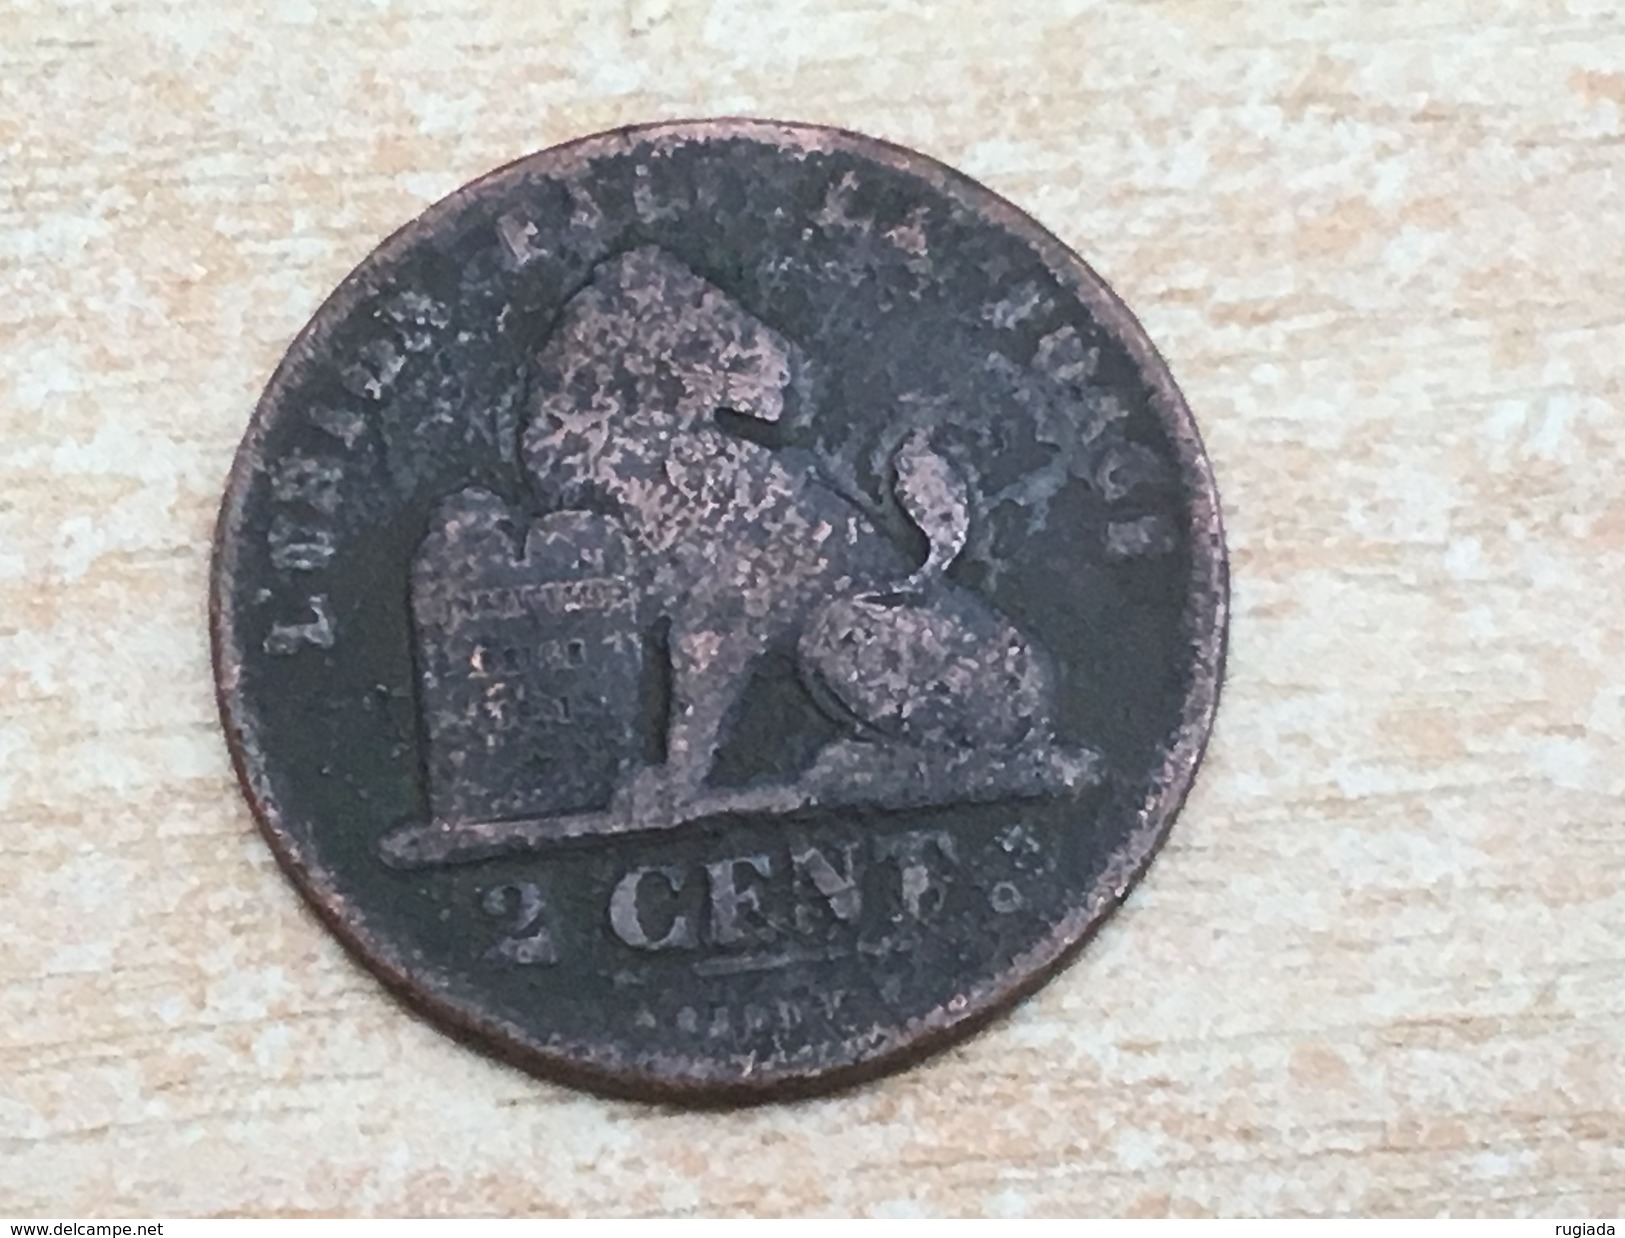 1836 Belgium 2 Deux Cents - F Fine Worn - 2 Cents